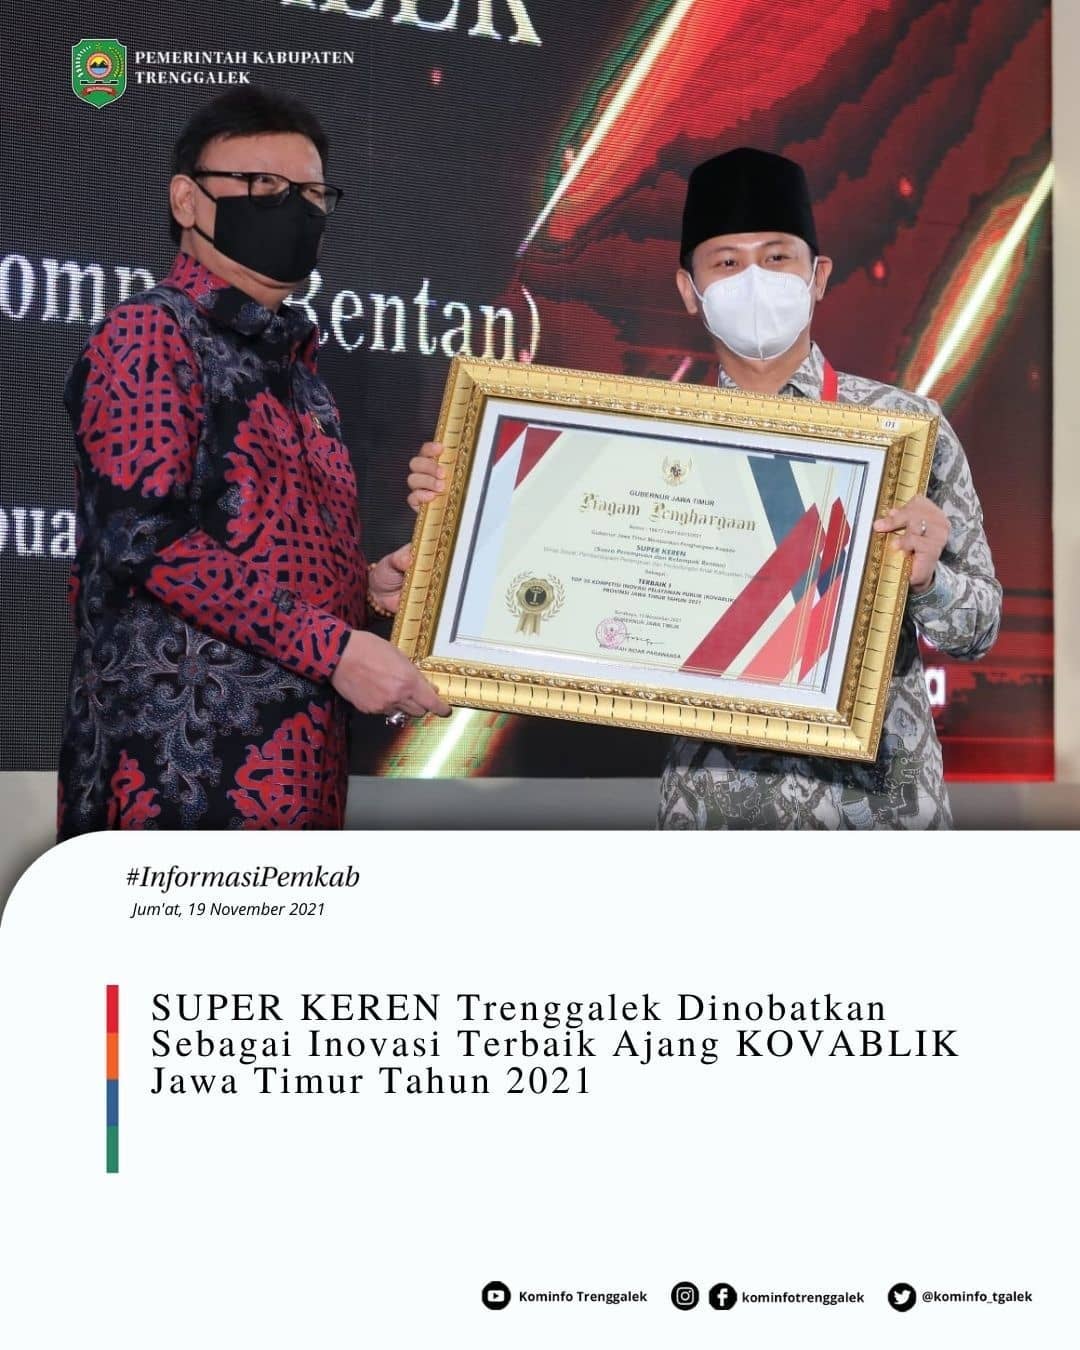 SUPER KEREN Trenggalek Dinobatkan Sebagai Inovasi Terbaik Ajang Kovablik Jawa Timur Tahun 2021